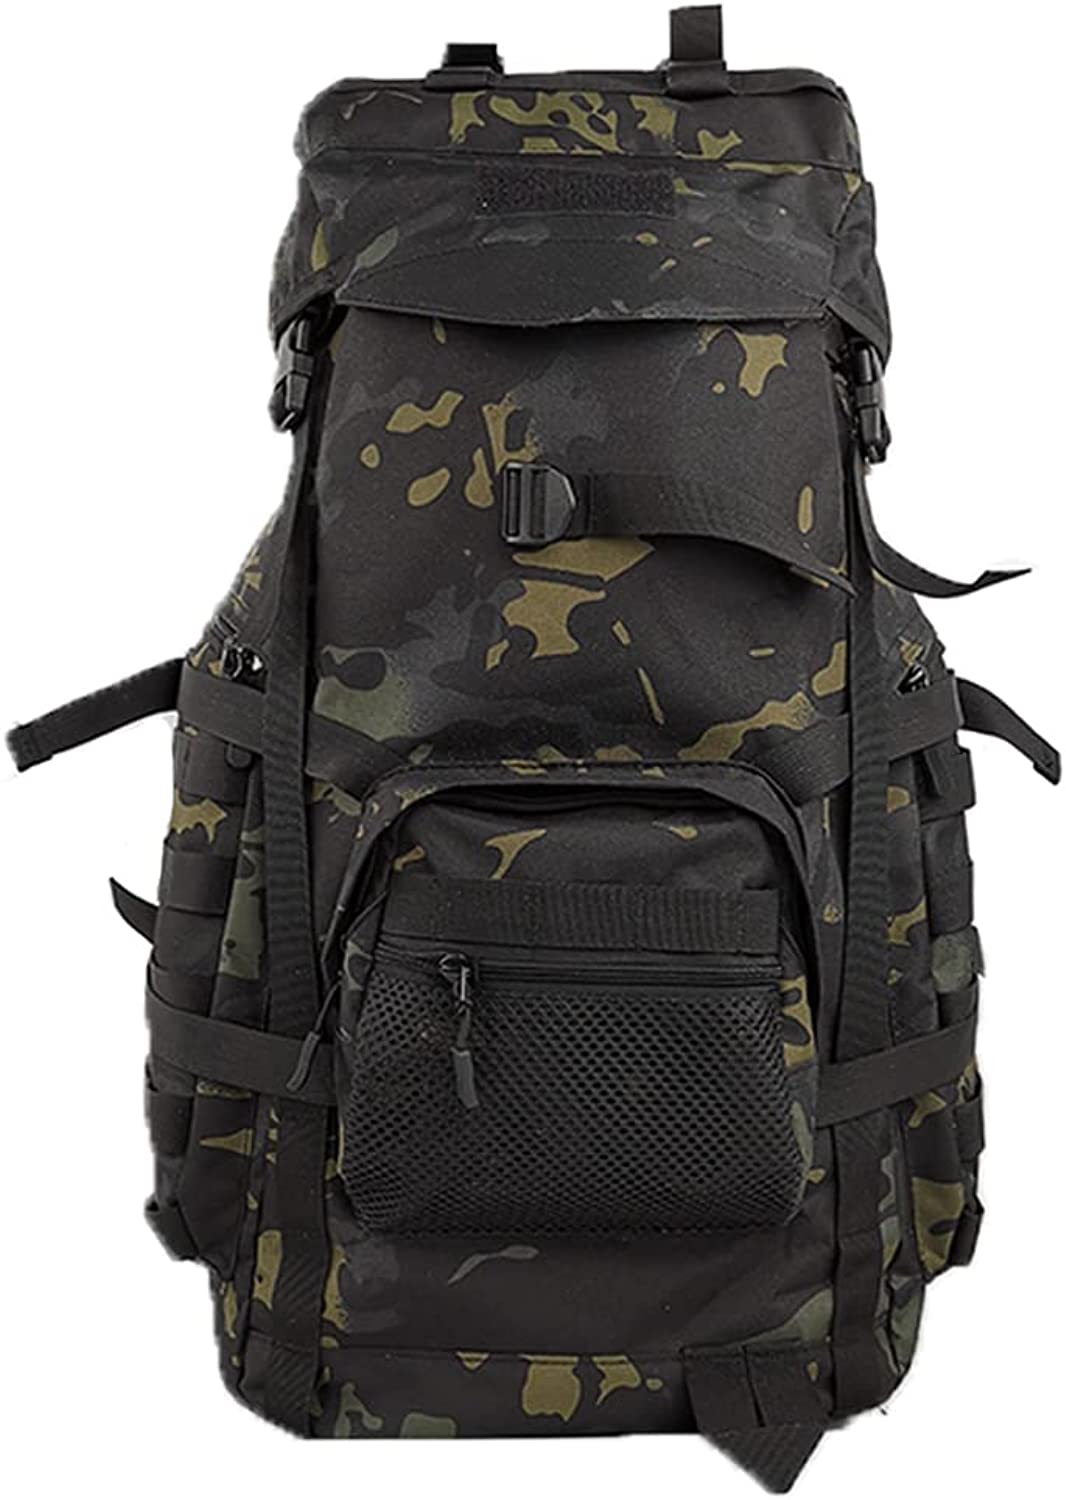 Extra Large Camping Backpack For Men, Big Hiking Backpacking Backpack, 60 Liter 70l85l Oversized Rucksack Waterproof Backpack